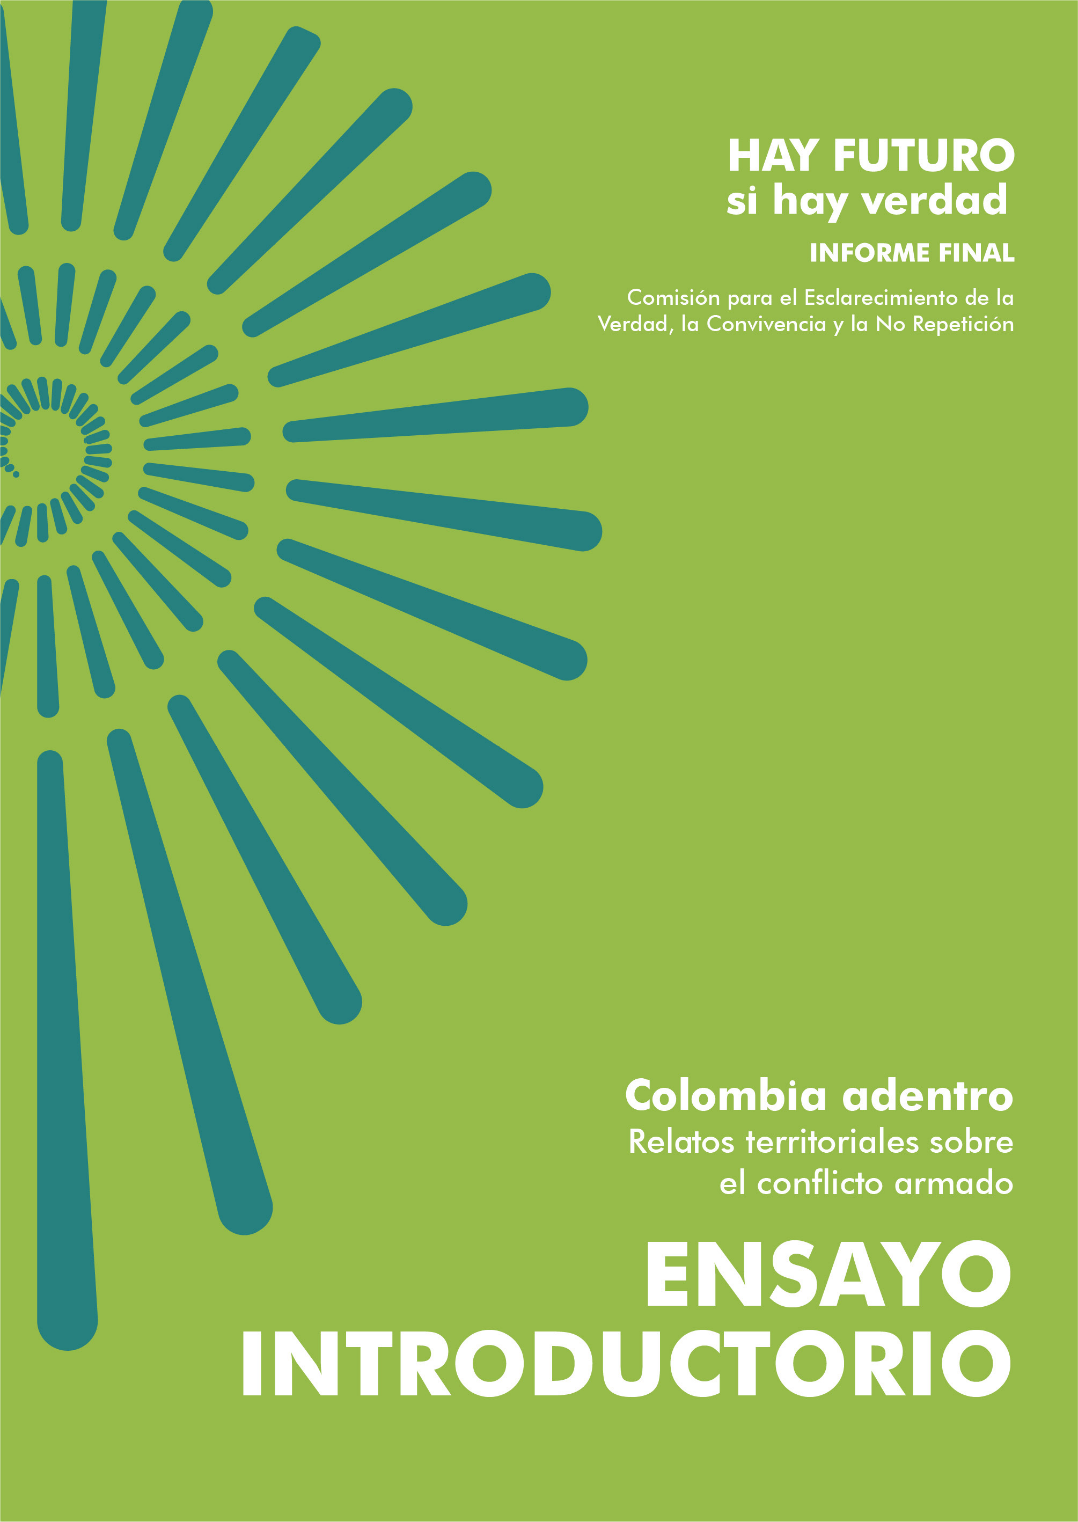 Hay futuro si hay verdad : informe final, Colombia adentro. Relatos territoriales sobre el conflicto armado / Ensayo introductorio